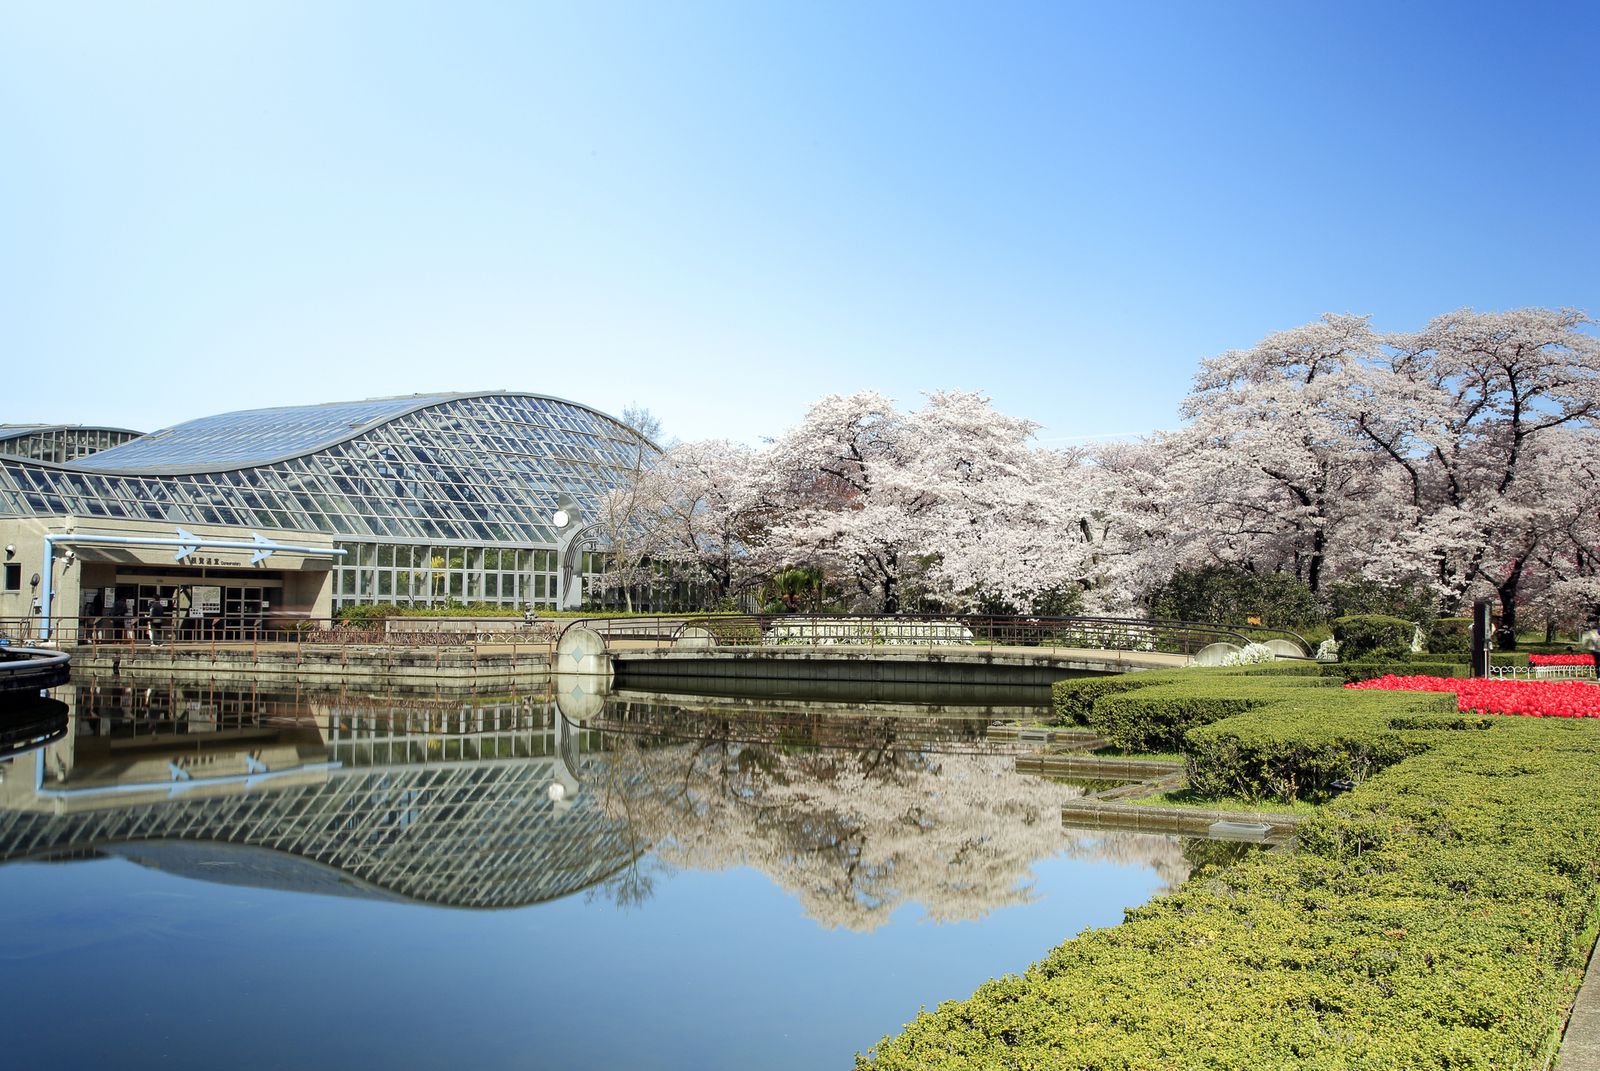 京都の心やすらぐスポット「京都府立植物園」でしたい5つのこと | RETRIP[リトリップ]